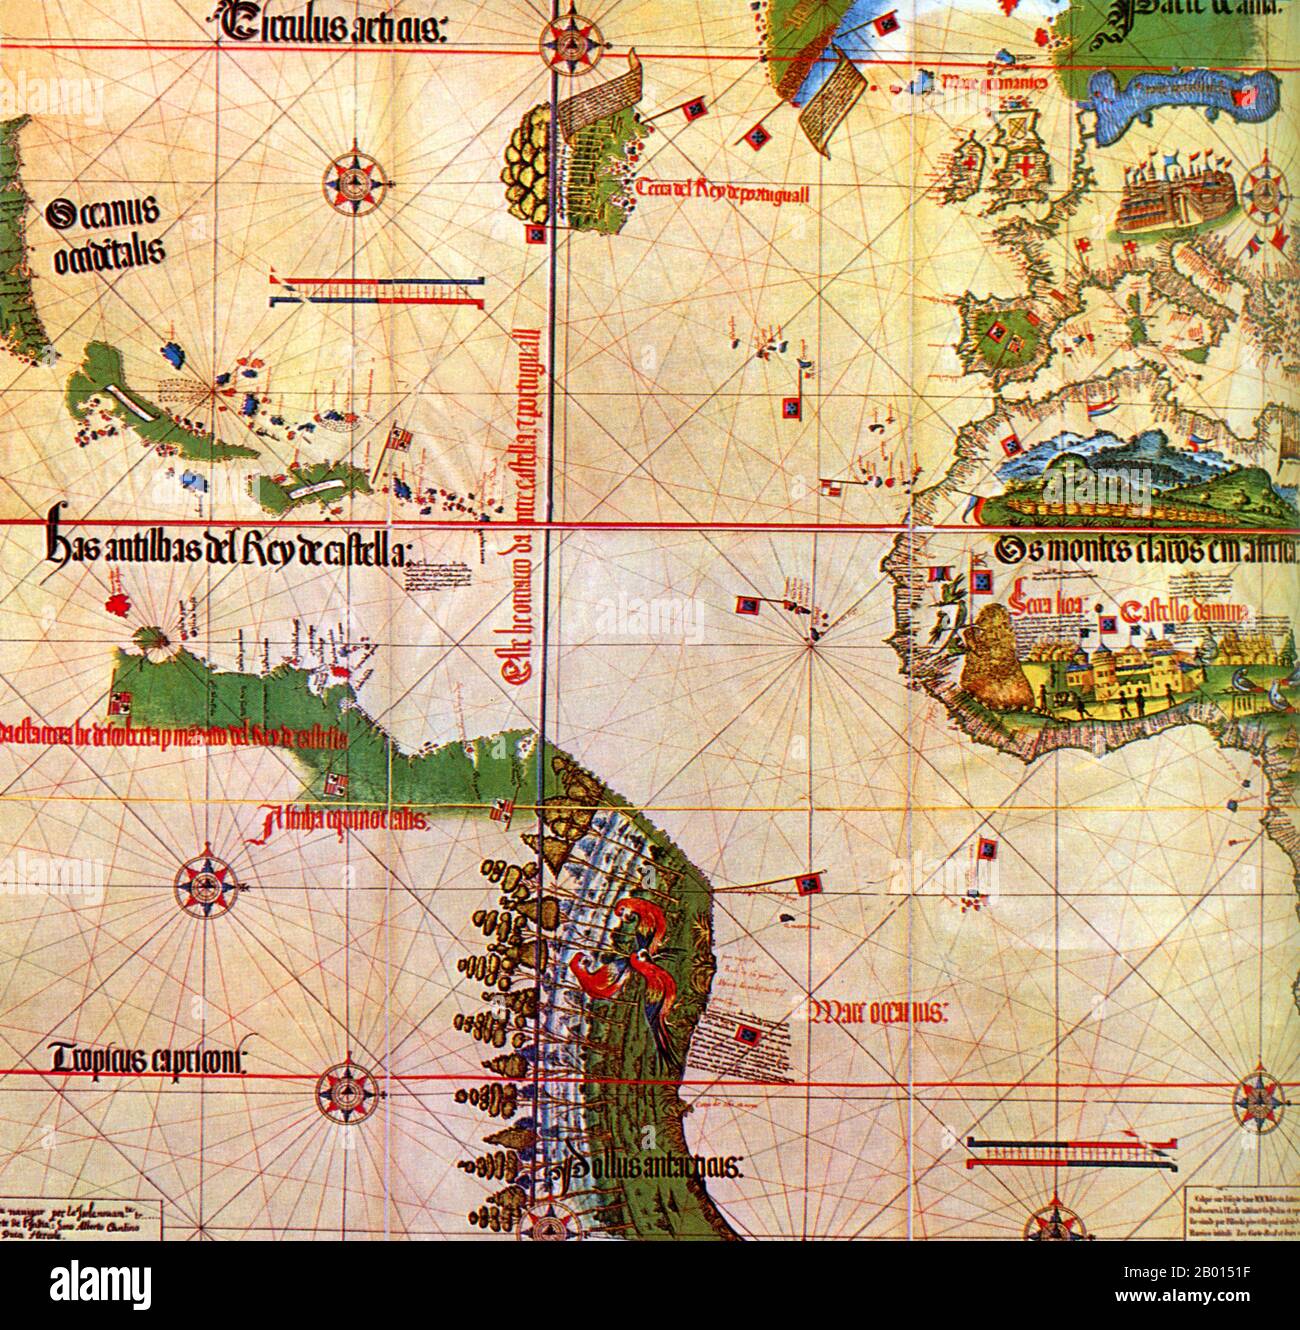 Spanien/Portugal: Alberto Cantino's (fl. Karte aus dem 15.-16. Jahrhundert) von 1502 zeigt die Meridianlinie im Atlantik, die spanisches Gebiet (westlich der Linie) von portugiesischen Besitzungen (Osten) abgrenzt. Unter der Aufsicht des in Spanien geborenen Papstes Alexander VI. Teilte der Vertrag von Tordesillas im Jahr 1494 die Welt in zwei Hälften - in spanische und portugiesische Gebiete. Nach dem Erfolg des portugiesischen Seefahrers Vasco da Gama bei der Entdeckung einer Seeroute um Afrika nach Indien im Jahr 1498 beauftragte König Manuel I. Pedro Alvares Cabral mit der Führung einer zweiten Reise von 13 Schiffen und 1,500 Mann nach Indien. Stockfoto